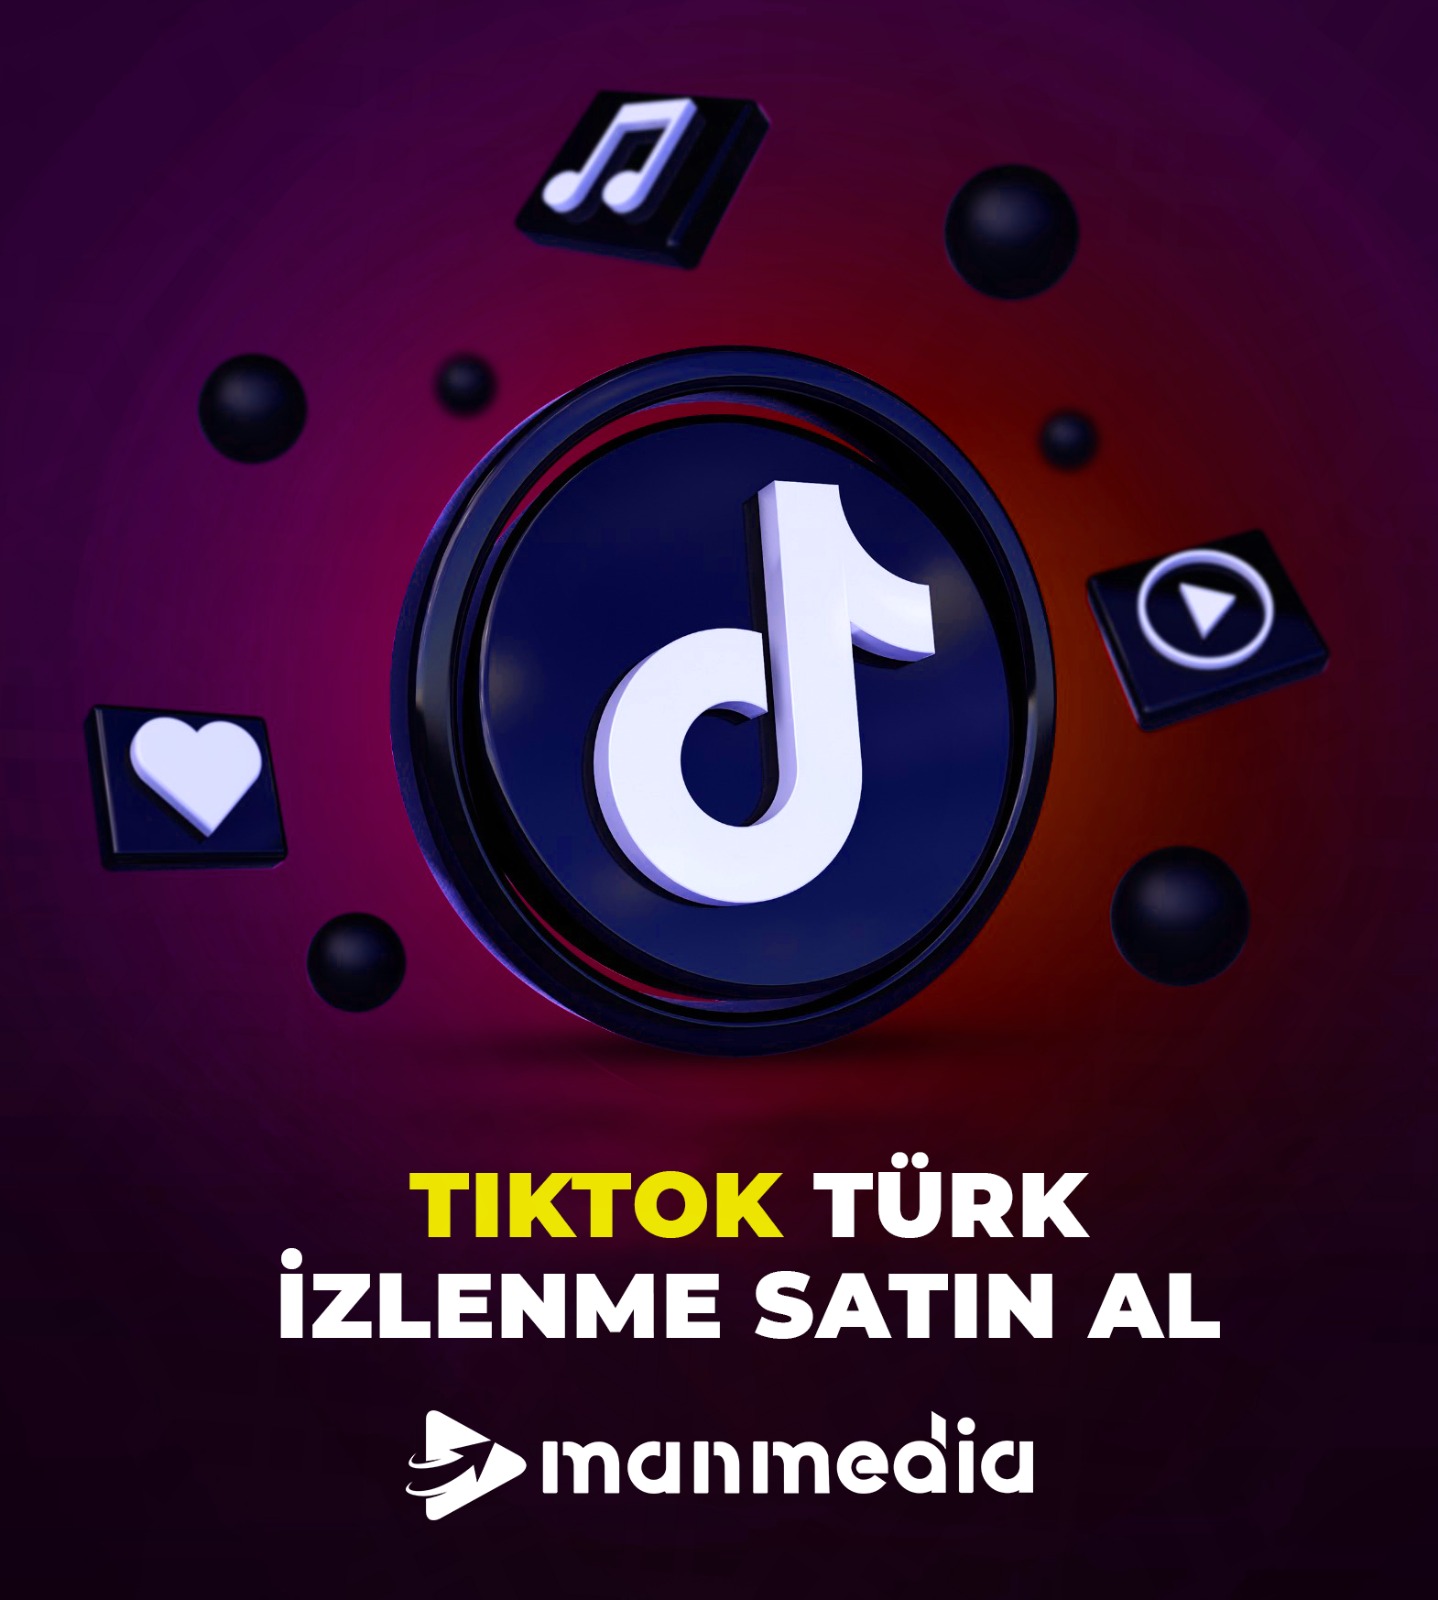 Tiktok Türk izlenme satın al